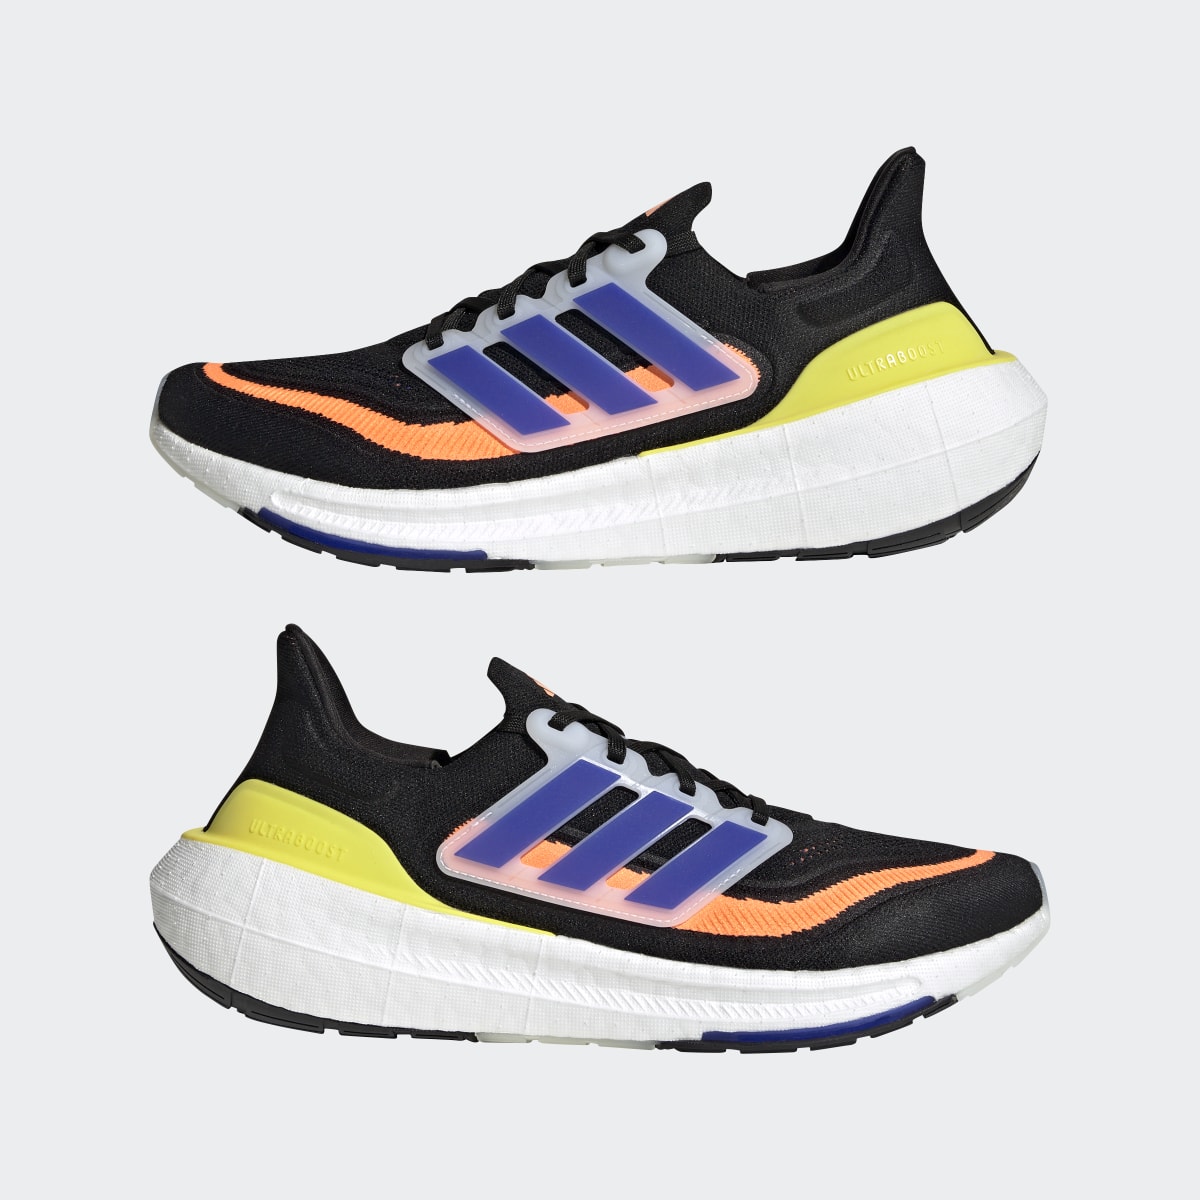 Adidas Ultraboost Light Running Shoes. 8